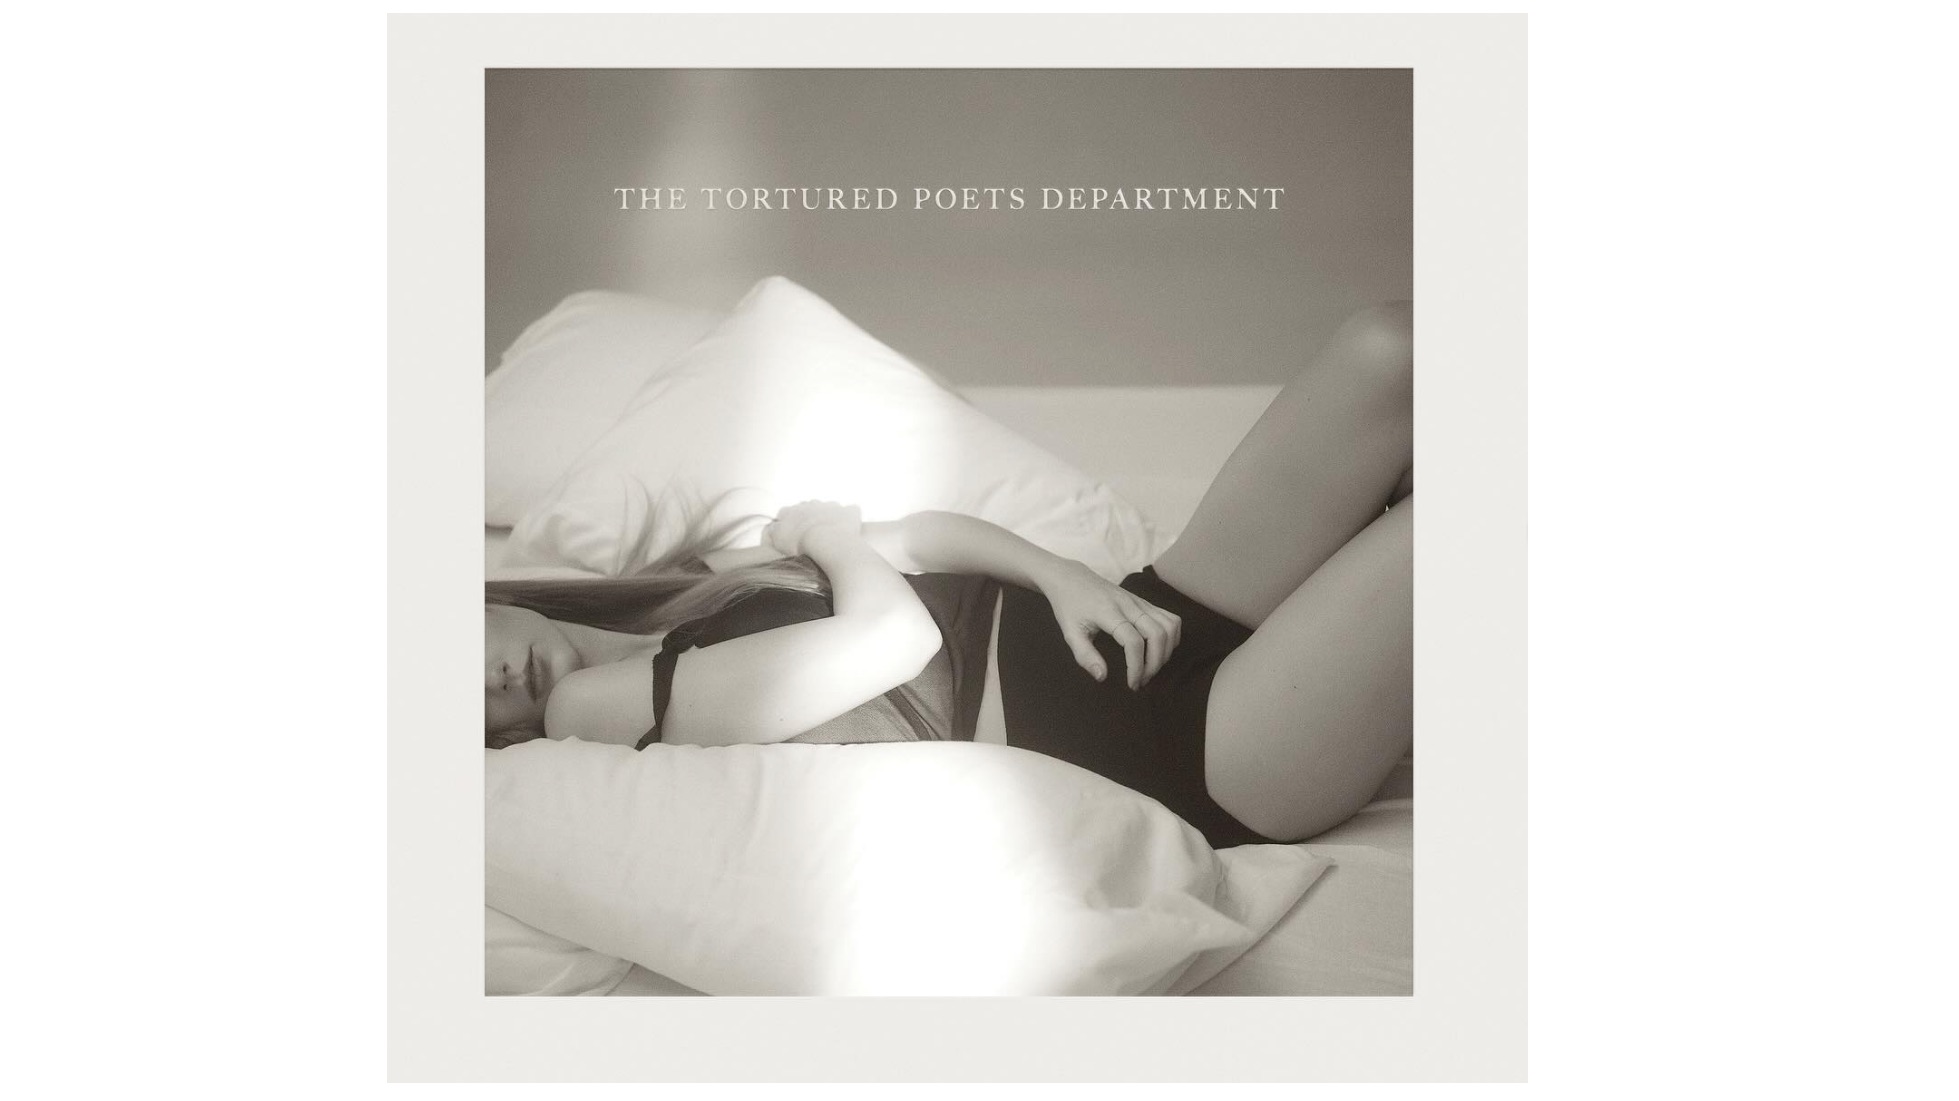 

	
		Taylor Swift lanza 15 canciones sorpresa y anuncia que 'The Tortured Poets Department' es un álbum doble
	
	